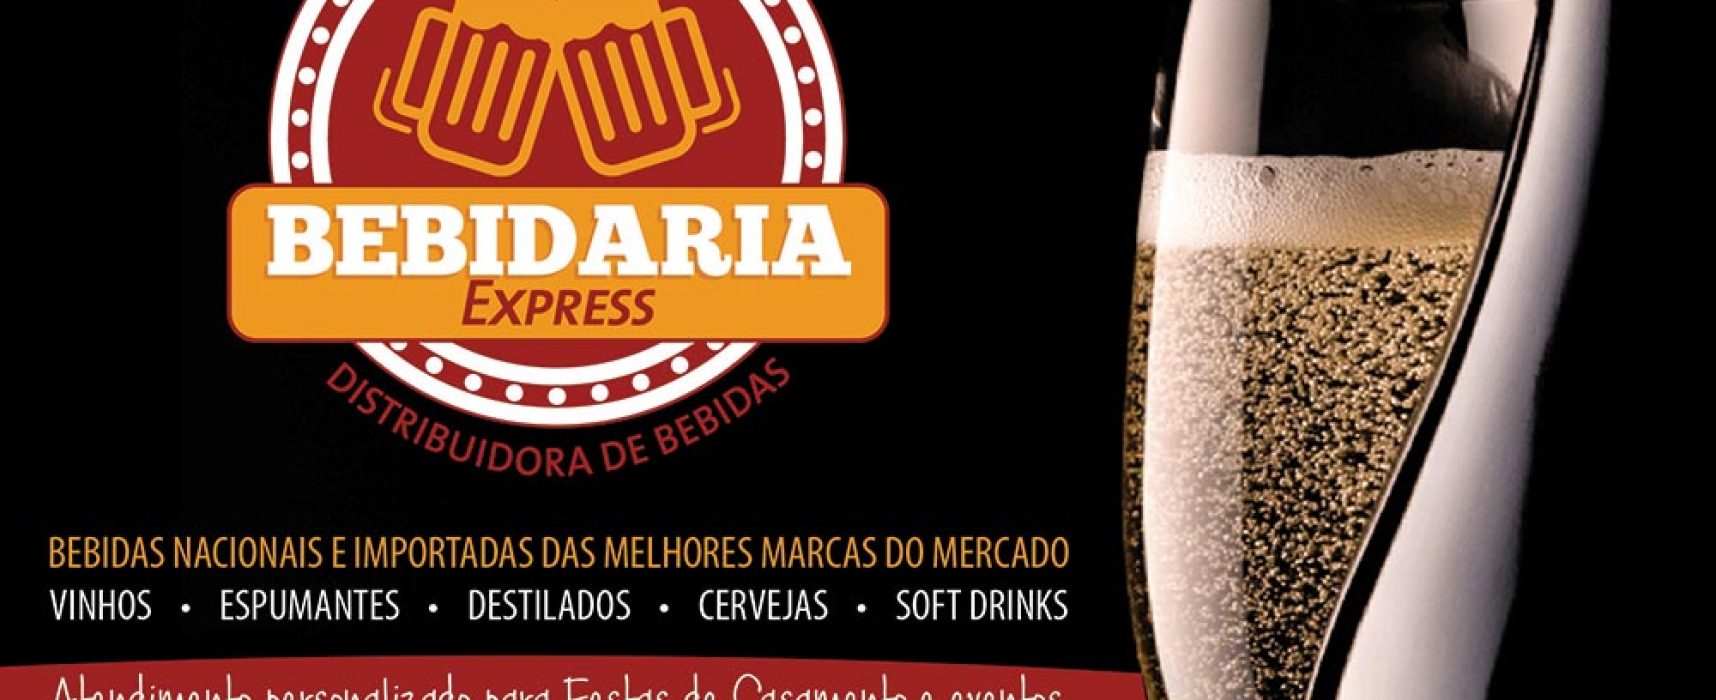 Especial #casarnapraia  Bebidaria Express